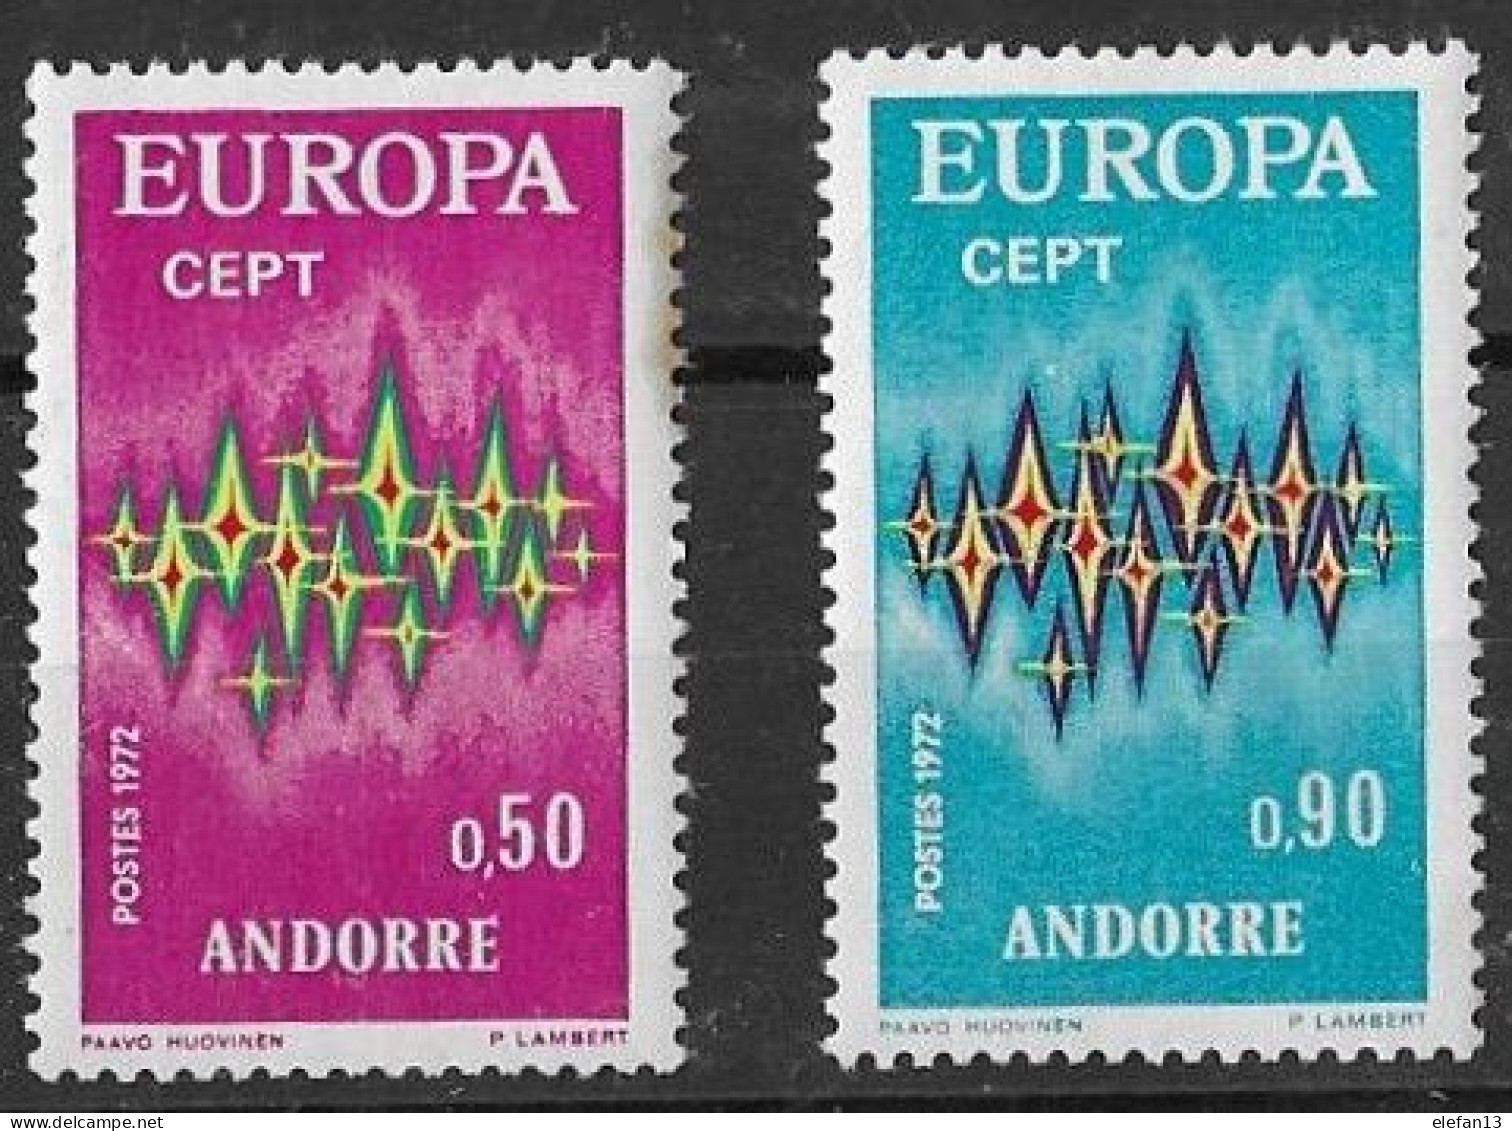 ANDORRE  EUROPA 1972  N°217 Et 218 **   Neufs Sans Charnière MNH (petite Tache Sur Le N°217) - Unused Stamps